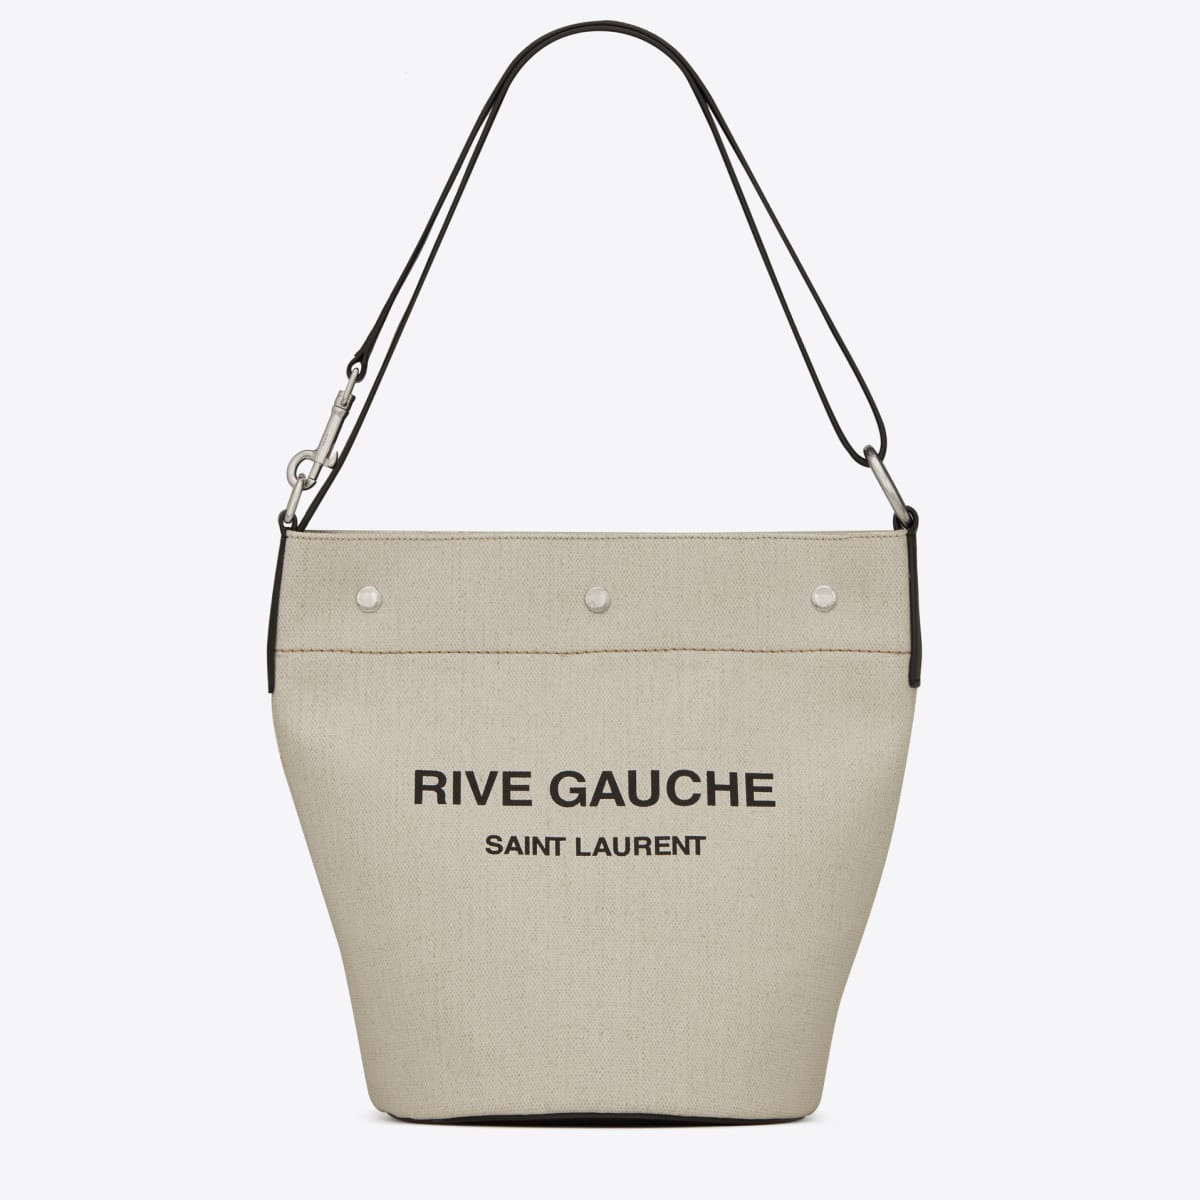 サンローランから新作バッグ「RIVE GAUCHE」が登場、スナップを閉じる 